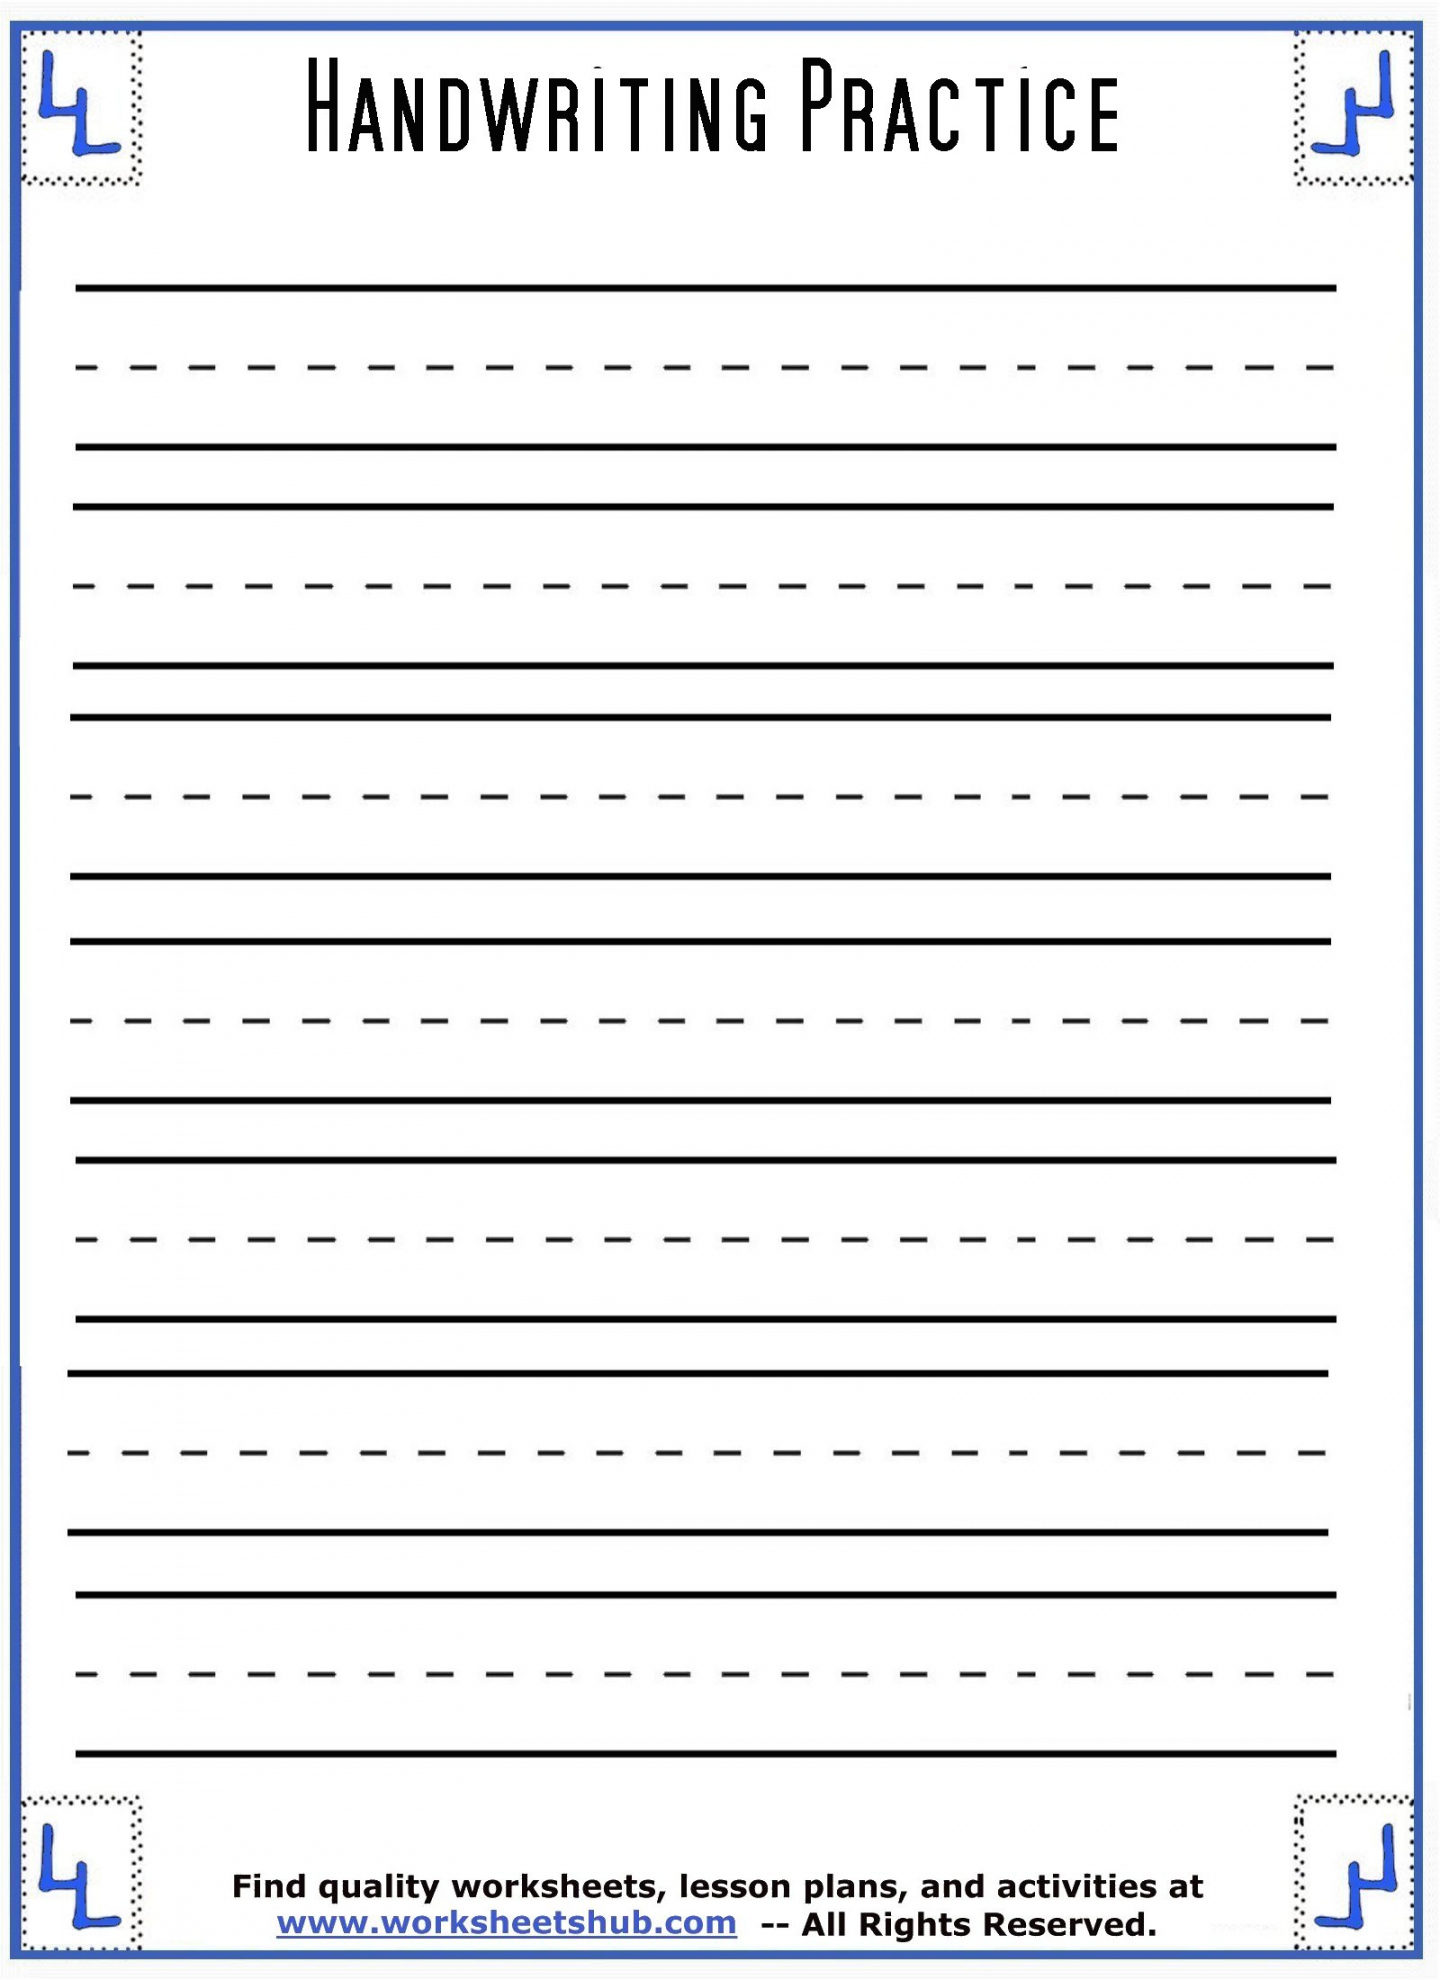 Free Printable Handwriting Worksheets - Printable - Handwriting Sheets:Printable -Lined Paper